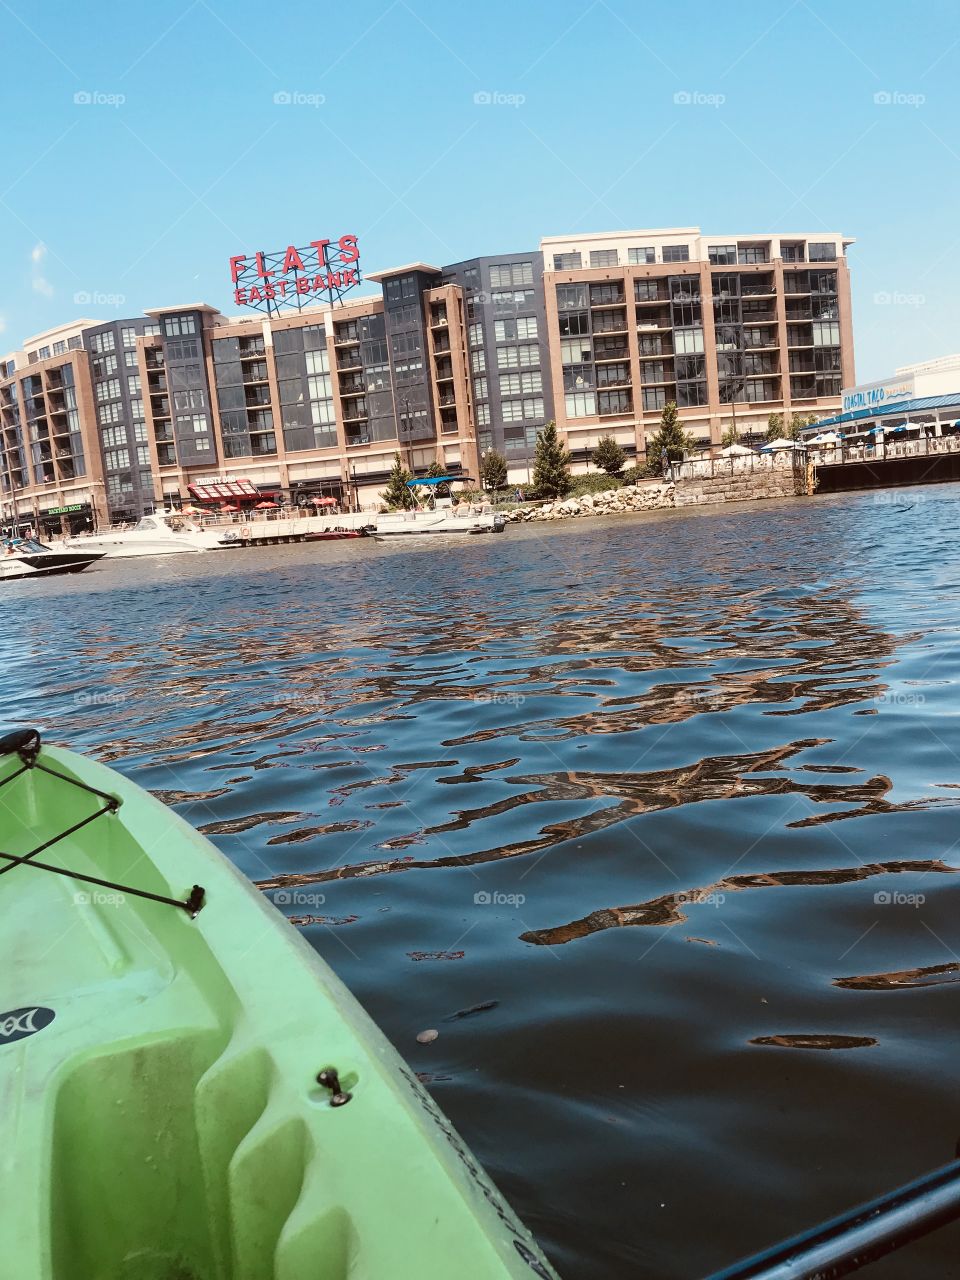 Kayaking Cleveland 